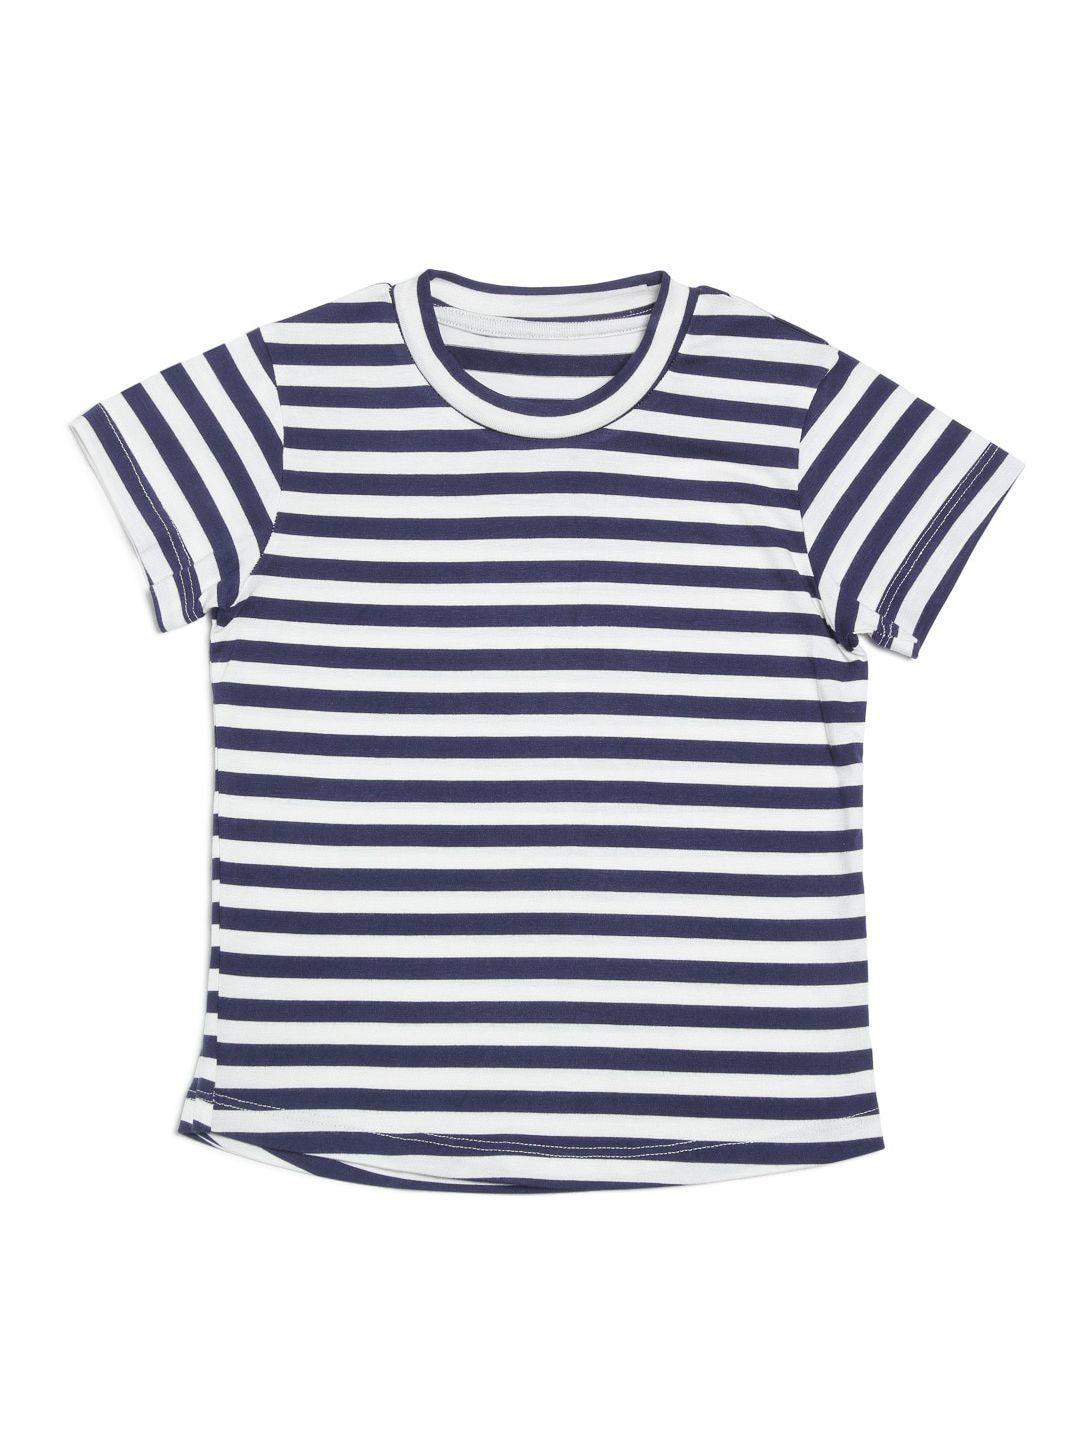 door74 kids navy blue & white striped cotton round neck t-shirt